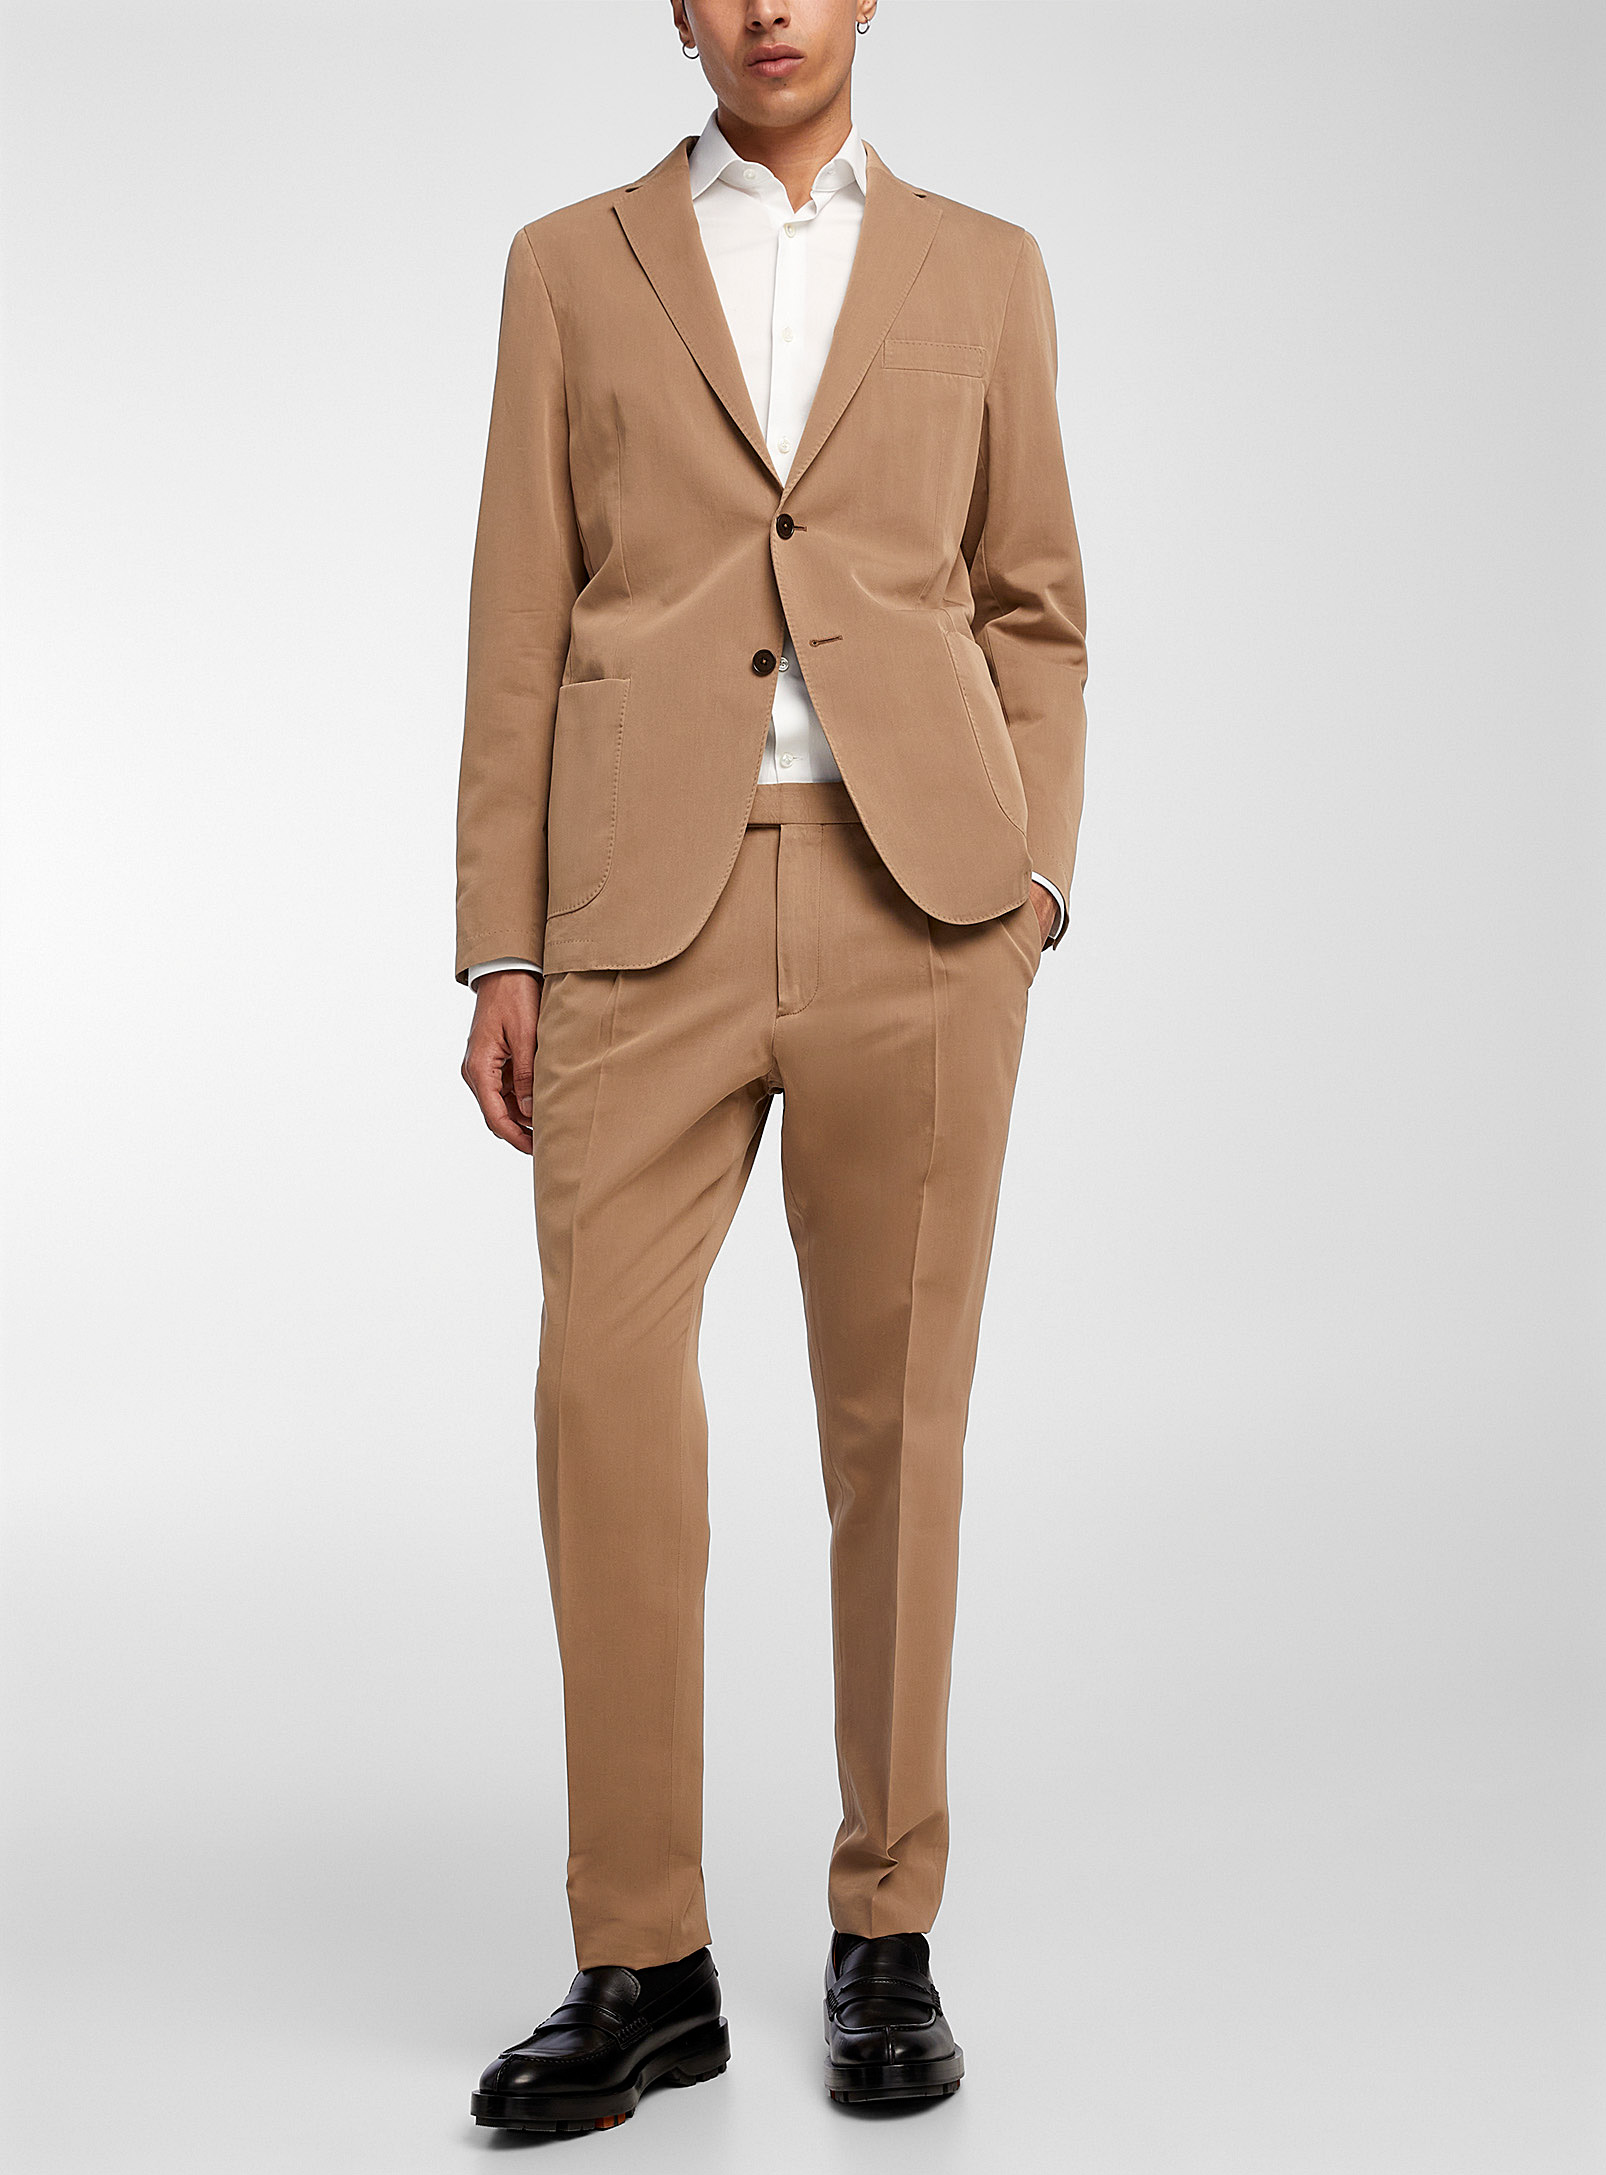 Zegna - Men's Cotton and silk plain suit